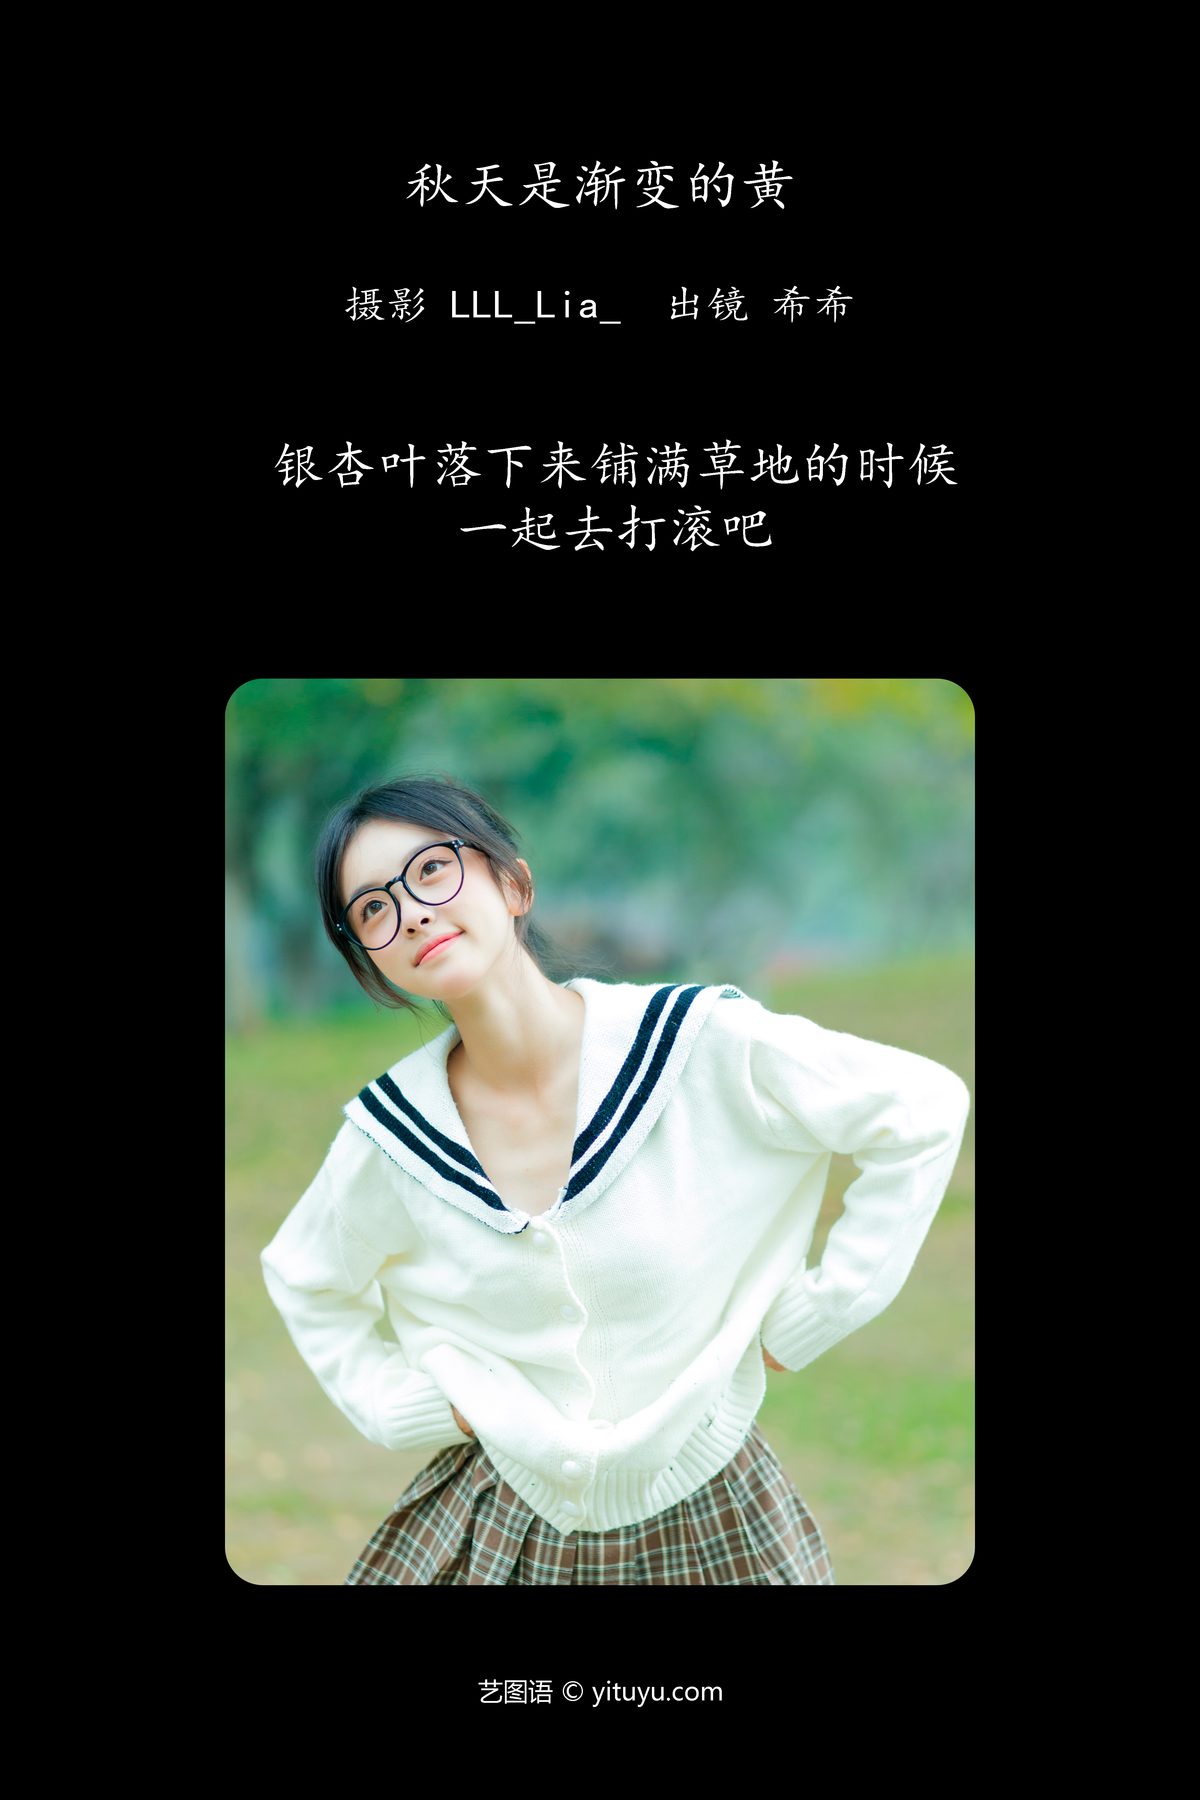 YiTuYu艺图语 Vol 5965 Xi Xi 0002 4032873579.jpg